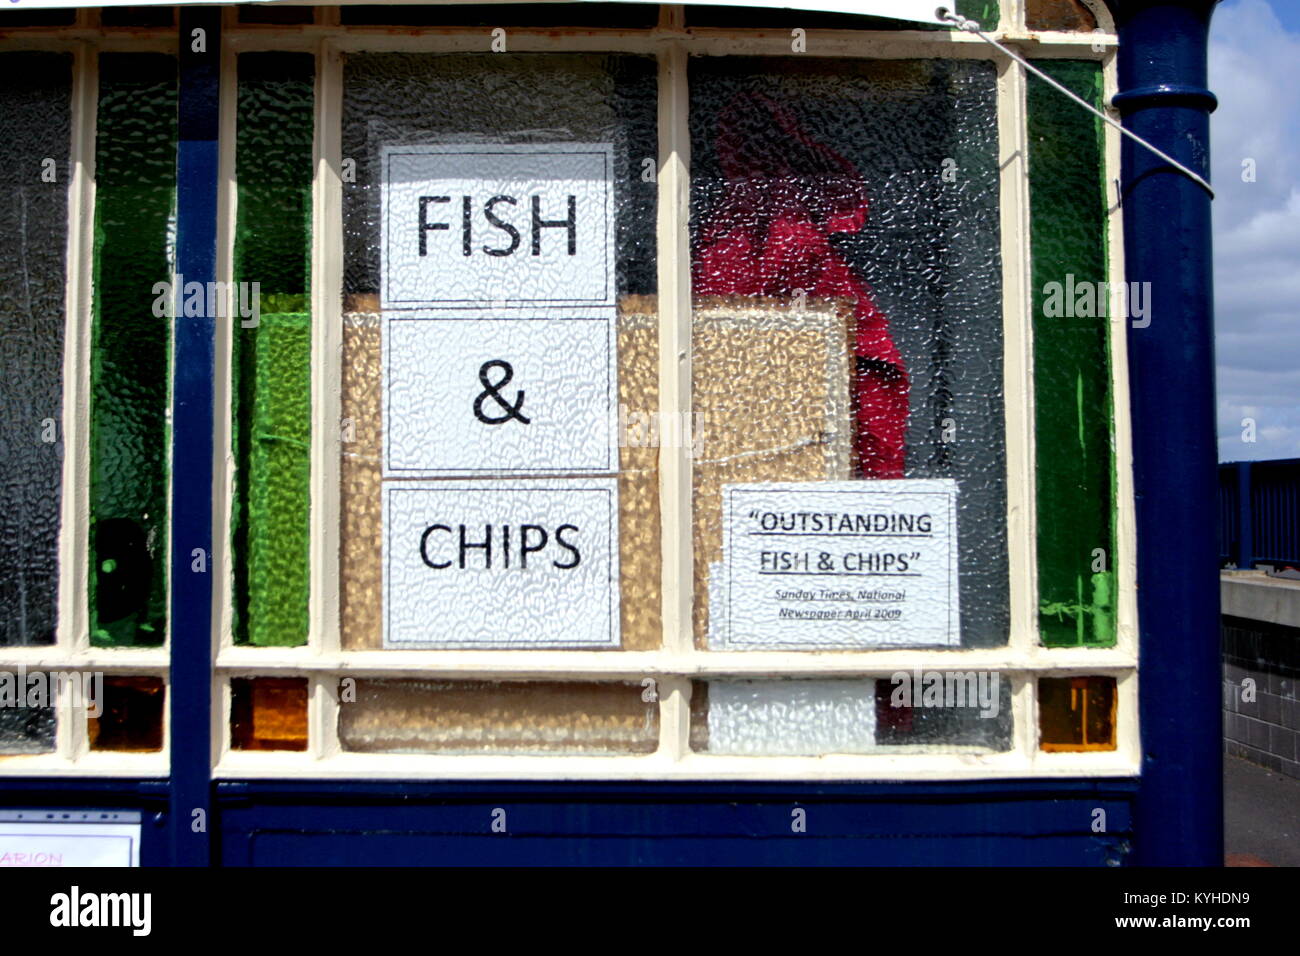 Der Squat Lobster gelobt von der Sunday Times Meer Fisch und Chips Fenster Anmelden restaurant Rothesay, Vereinigtes Königreich Stockfoto